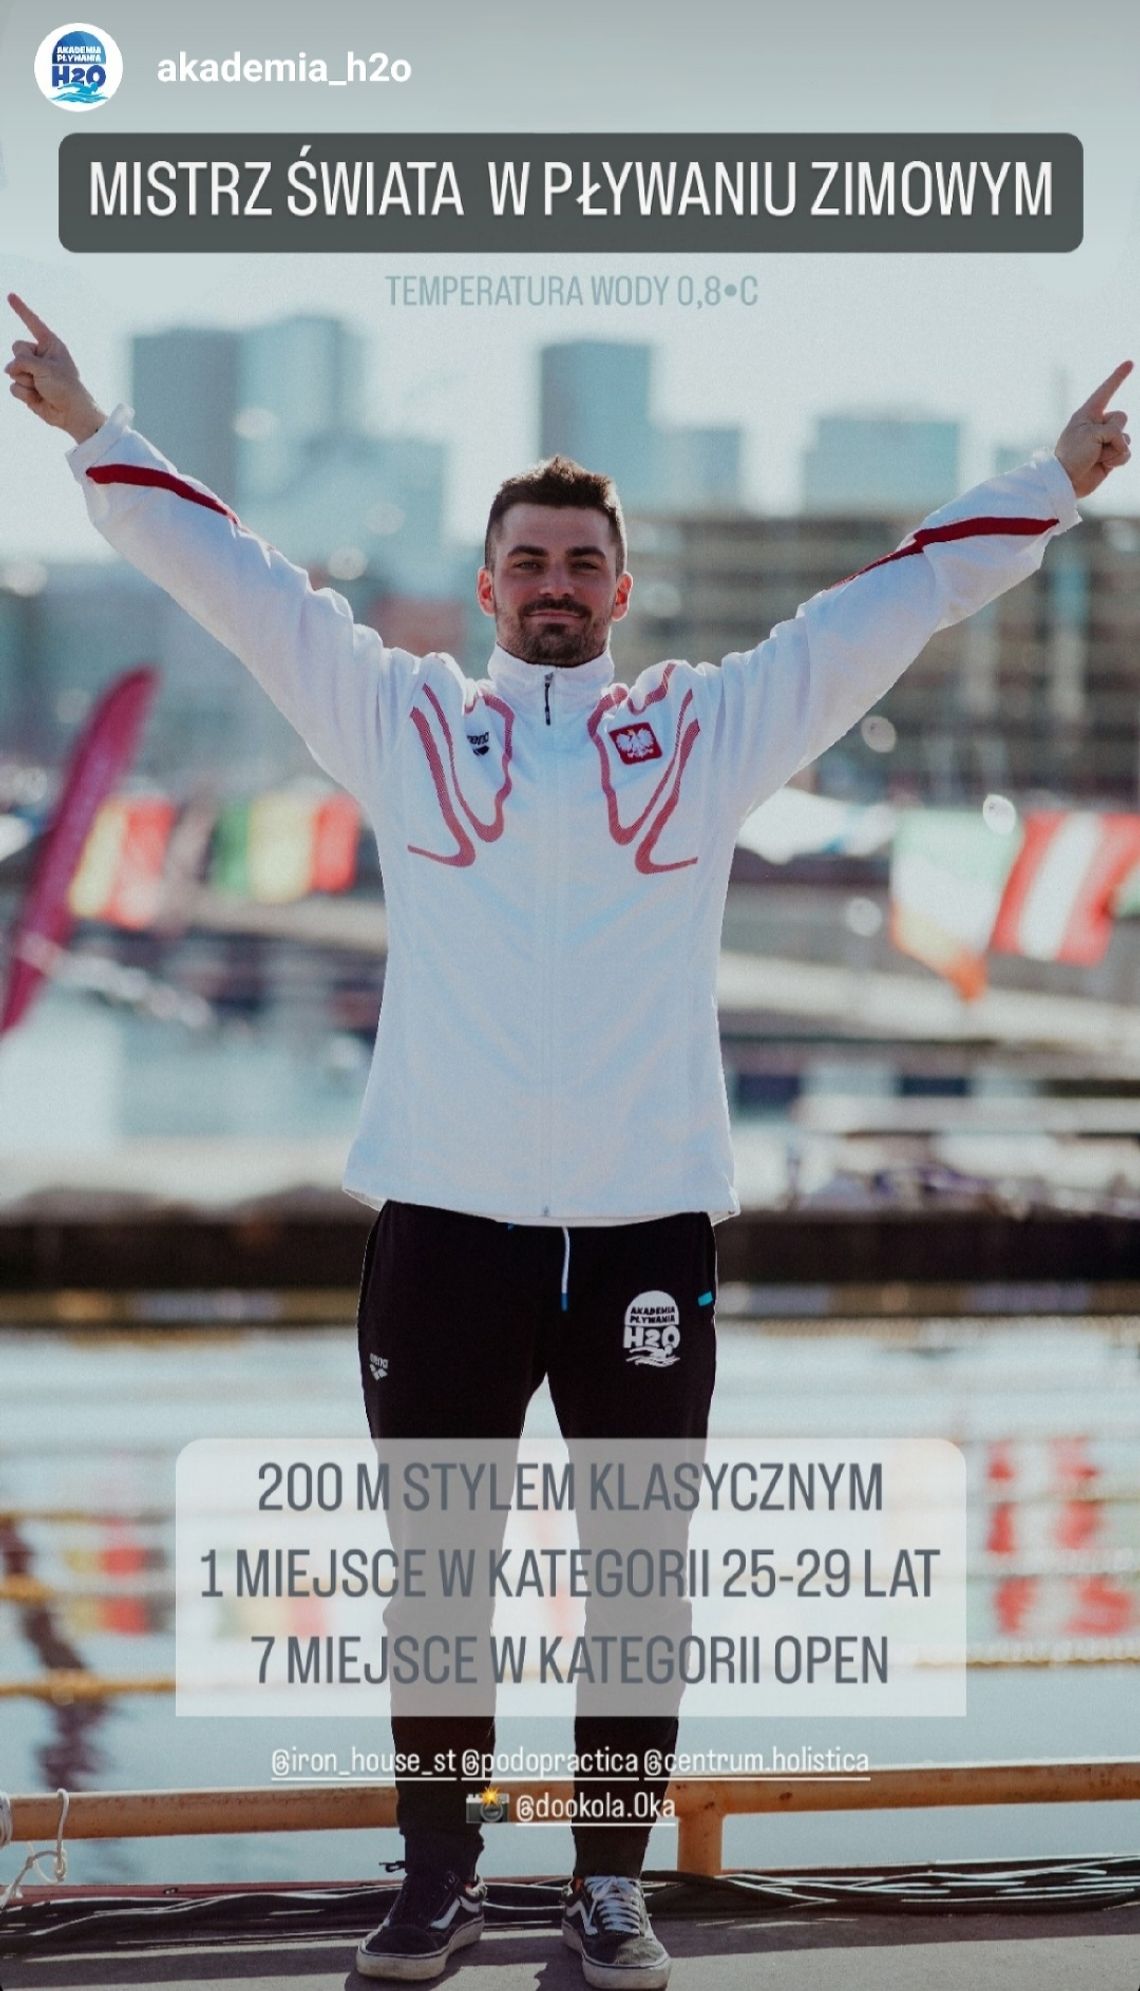 Mateusz Szymański z Włocławka Mistrzem Świata w Pływaniu Zimowym